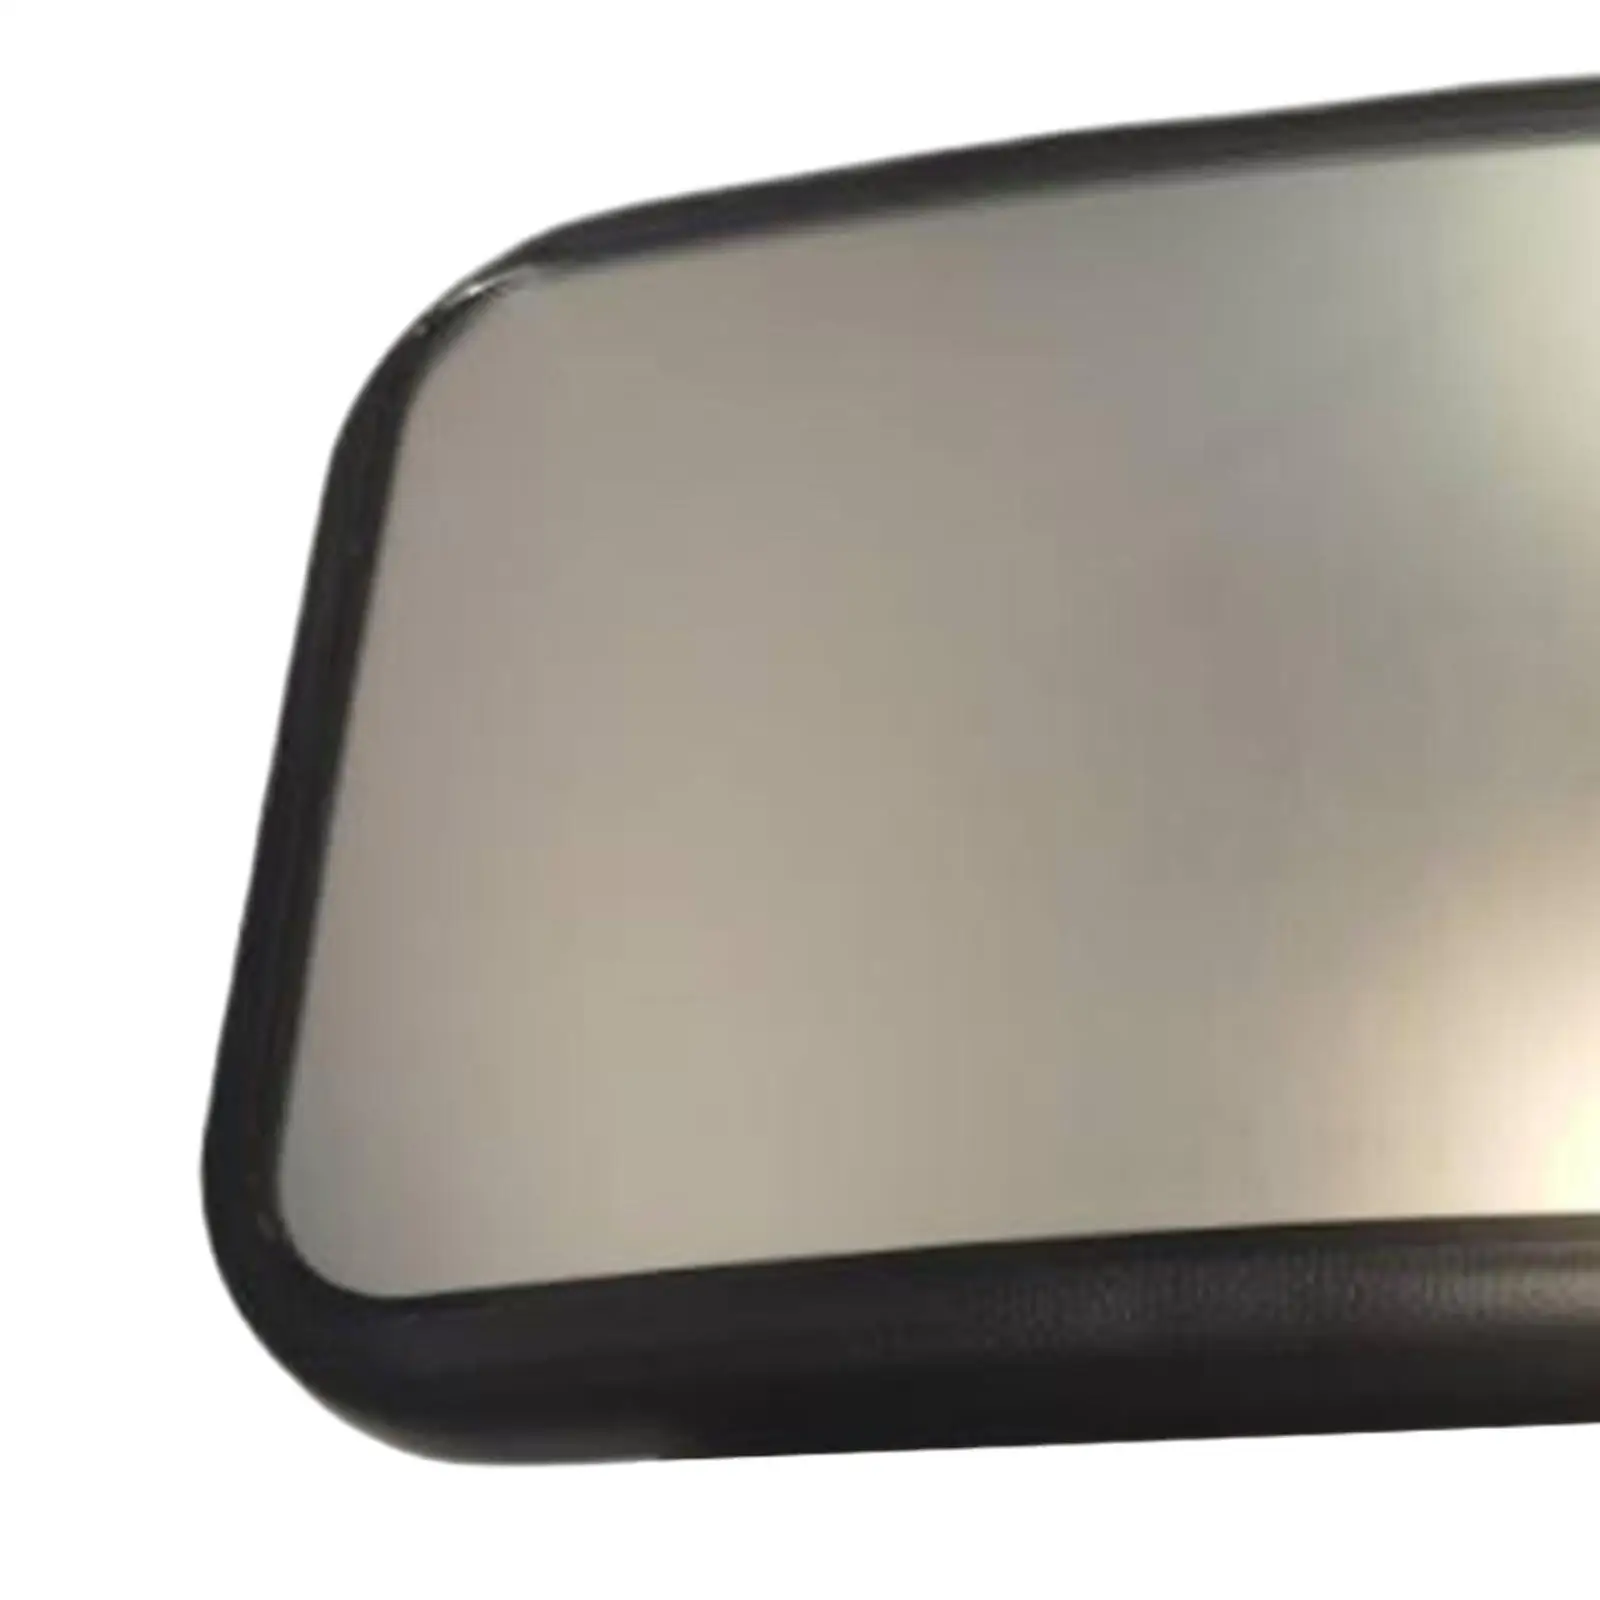 Bebek arabası Aynası Tablet Tutucu ile Paramparça Geçirmez Yüzey 360 Derece Ayarlanabilir 2 in 1 Araba Ayna için Bebek için Araba Kafalık